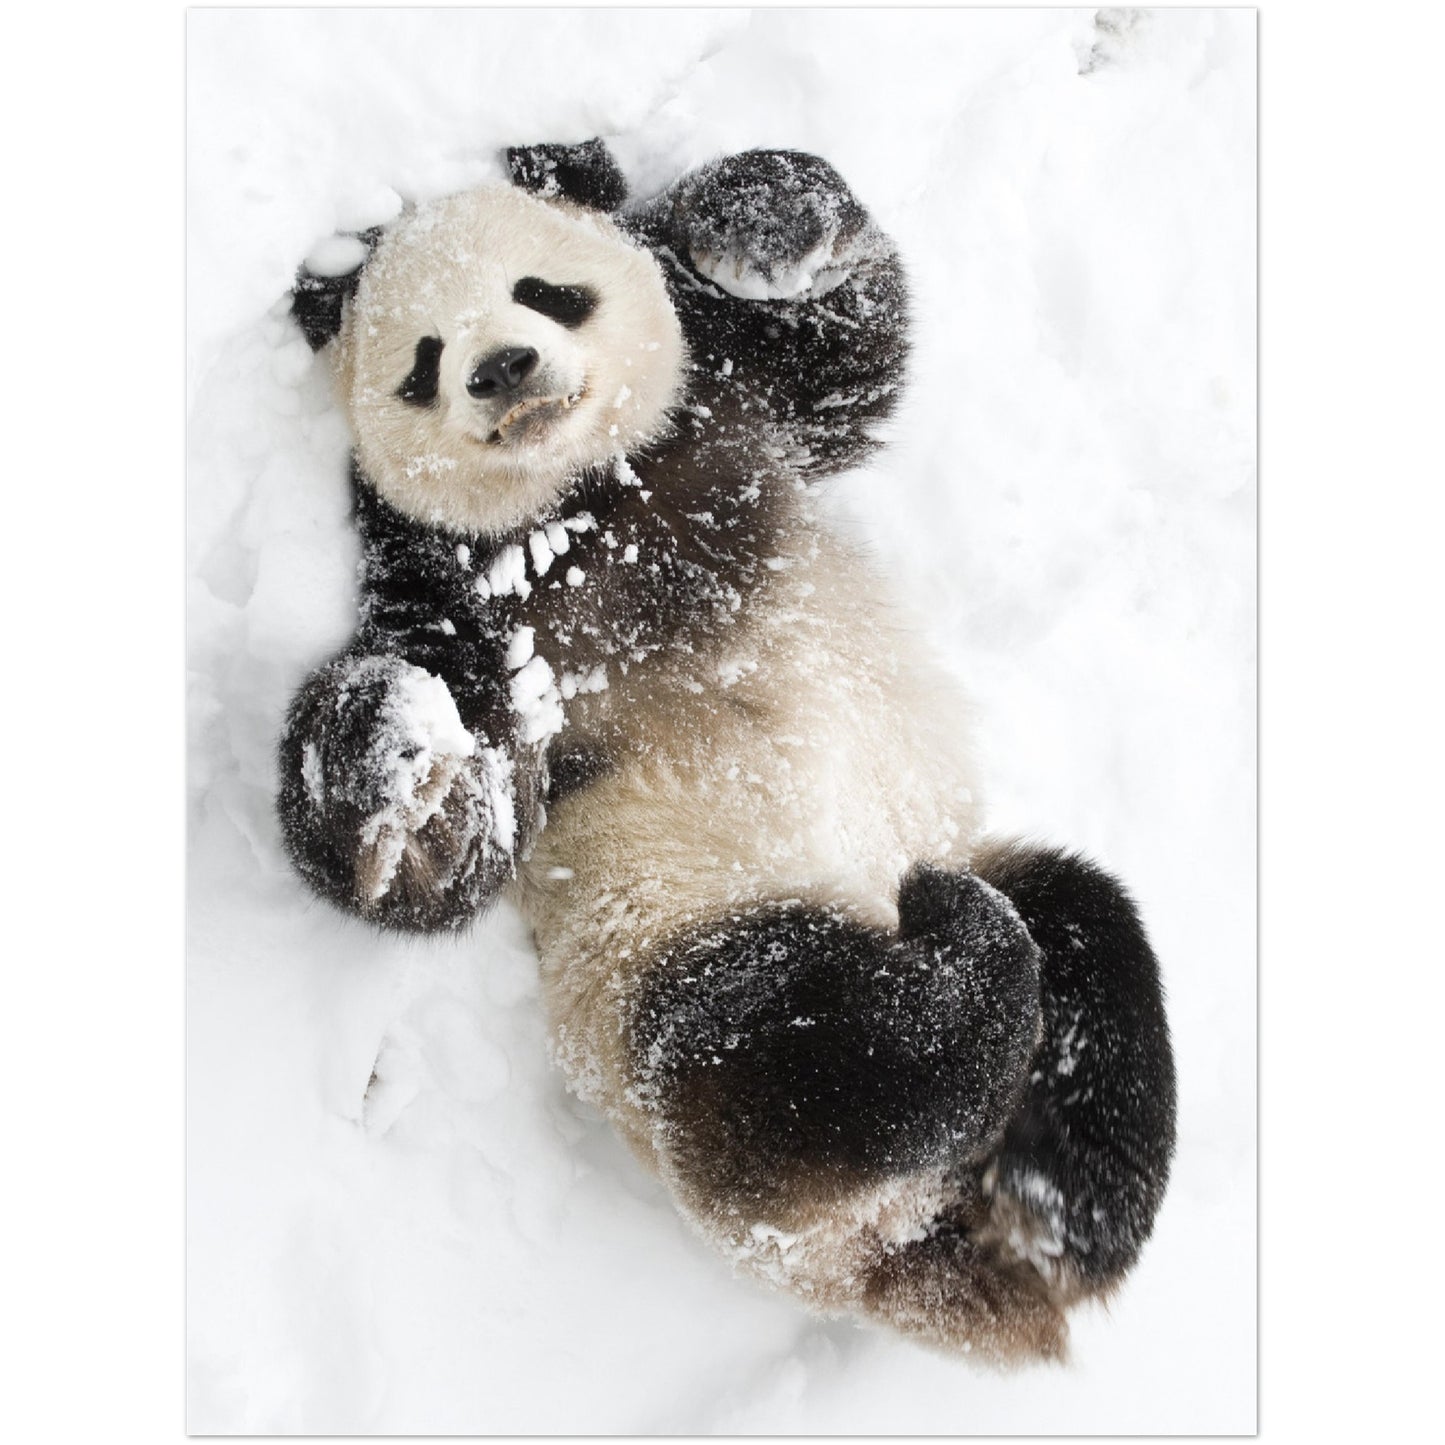 Playful Panda Print